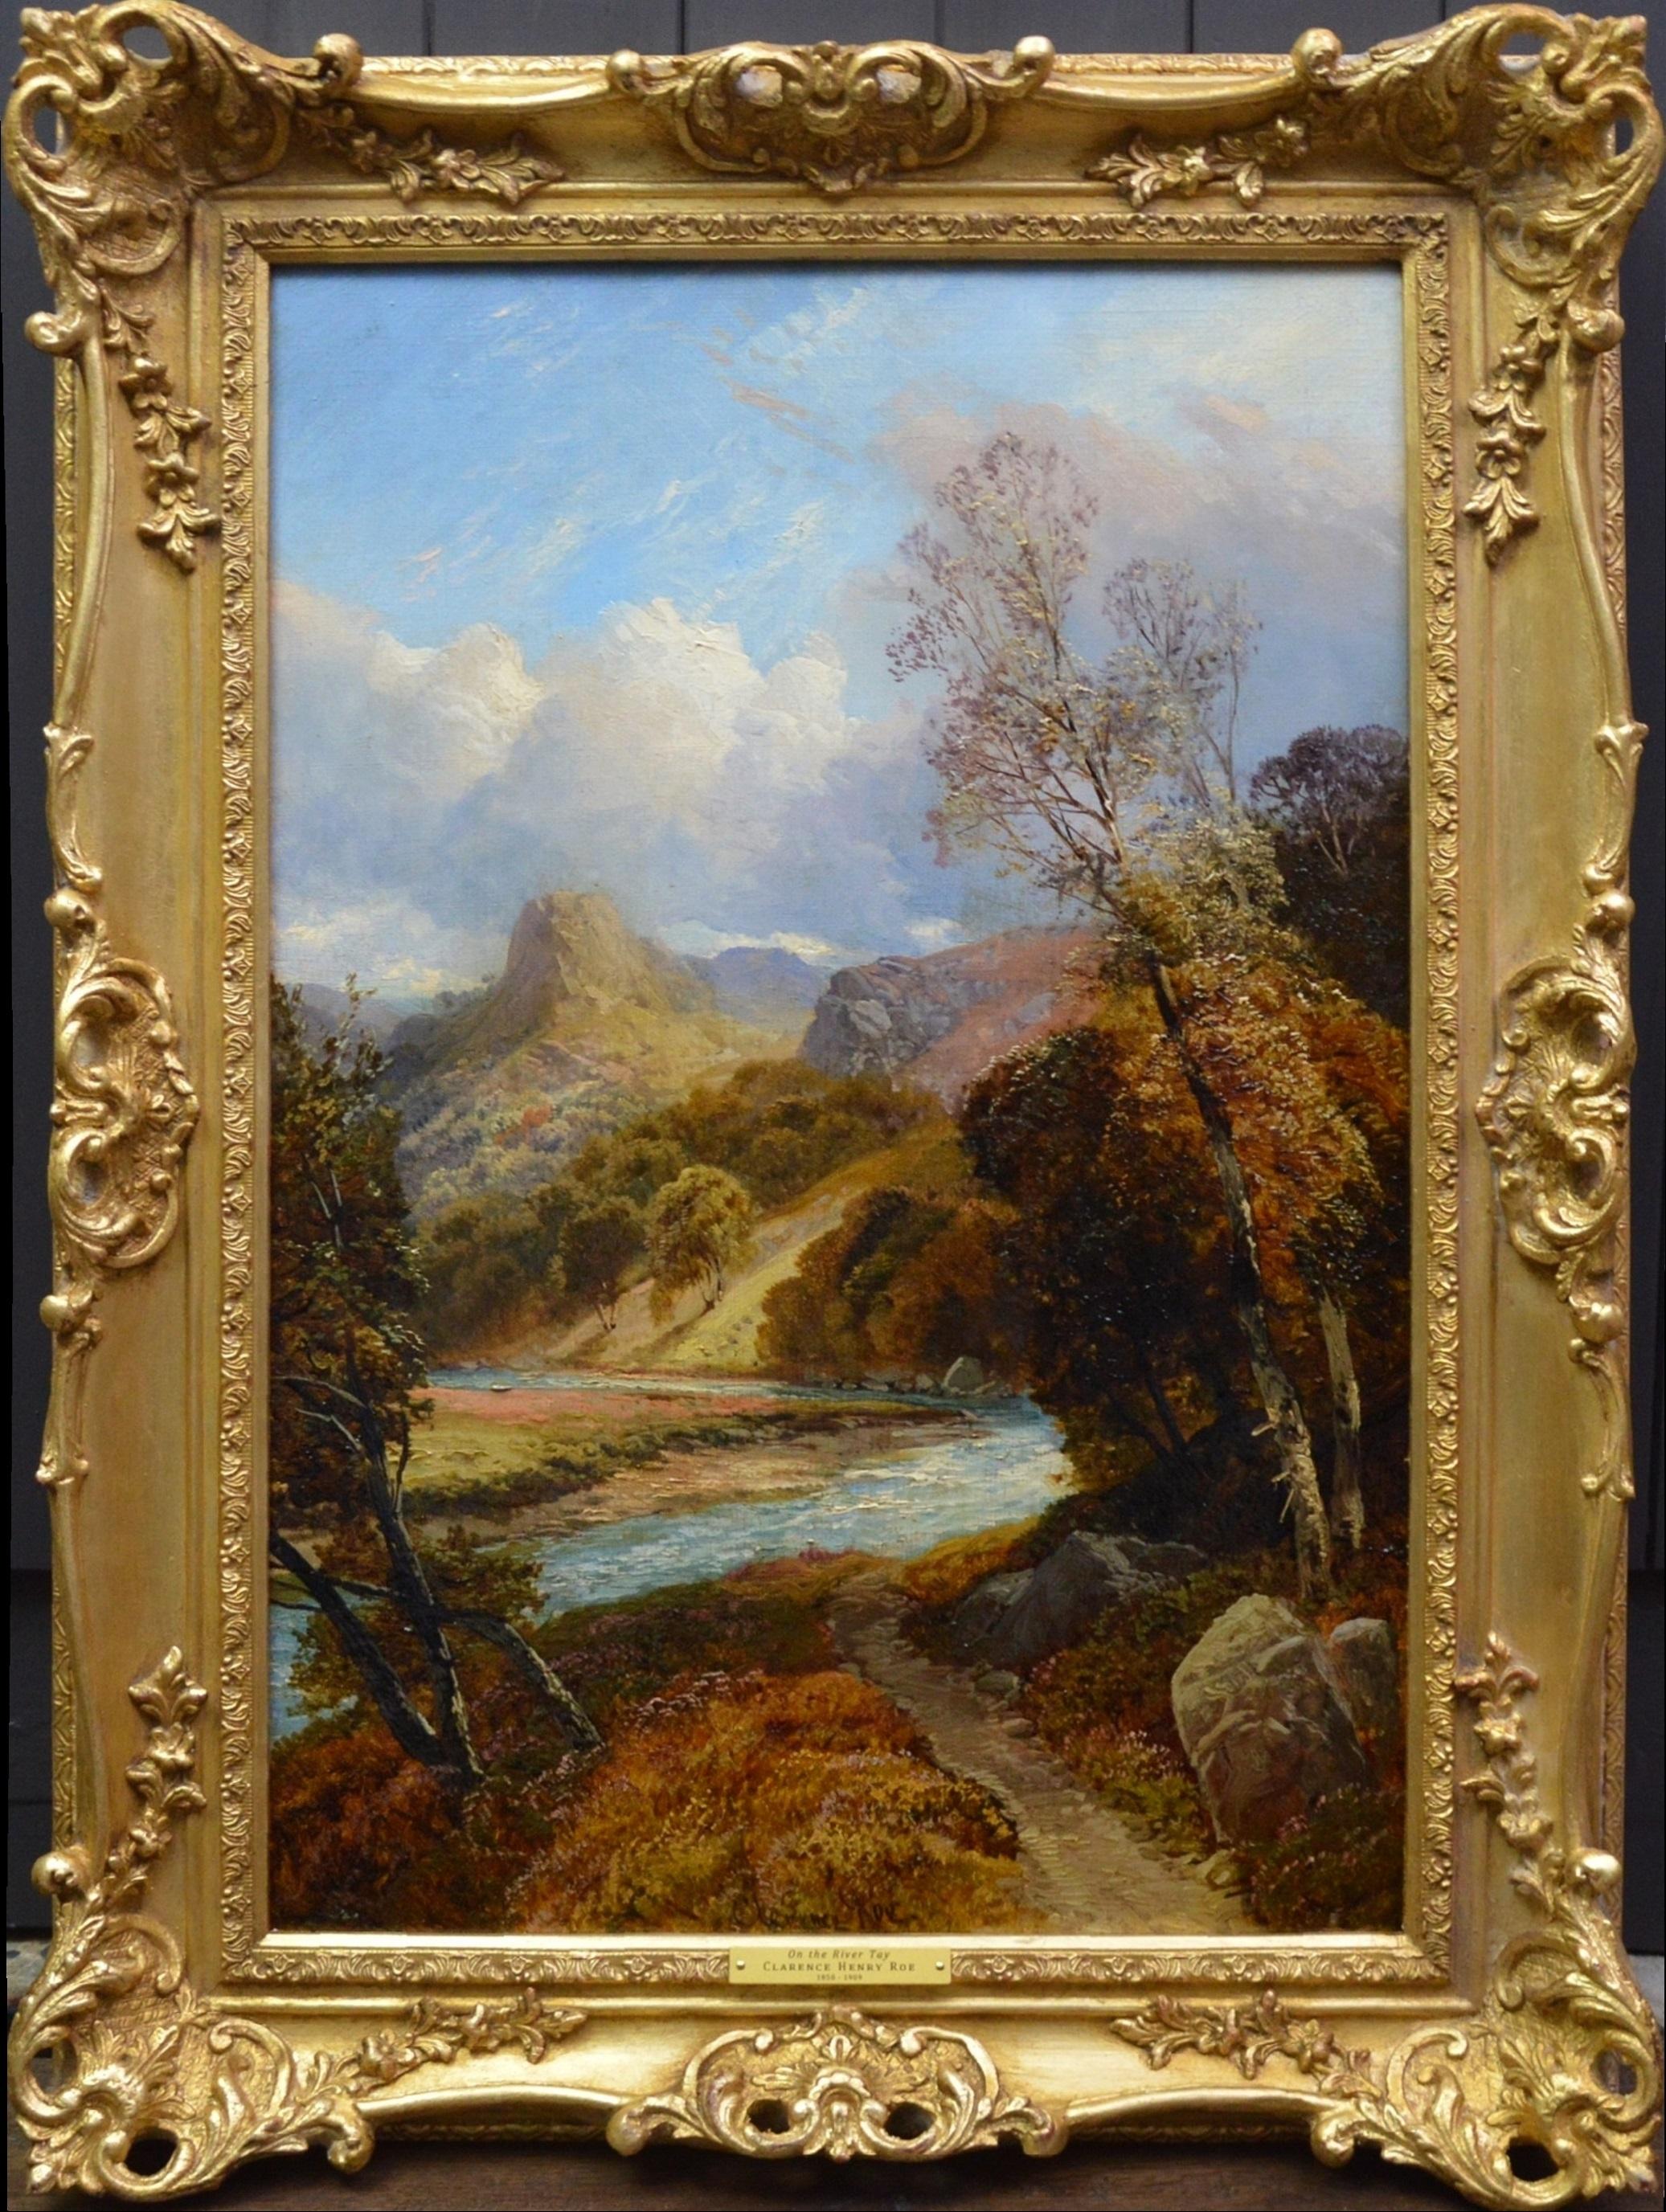 Still-Life Painting Clarence Roe - On the River Tay - Peinture à l'huile du 19ème siècle - Paysage des Highlands écossais